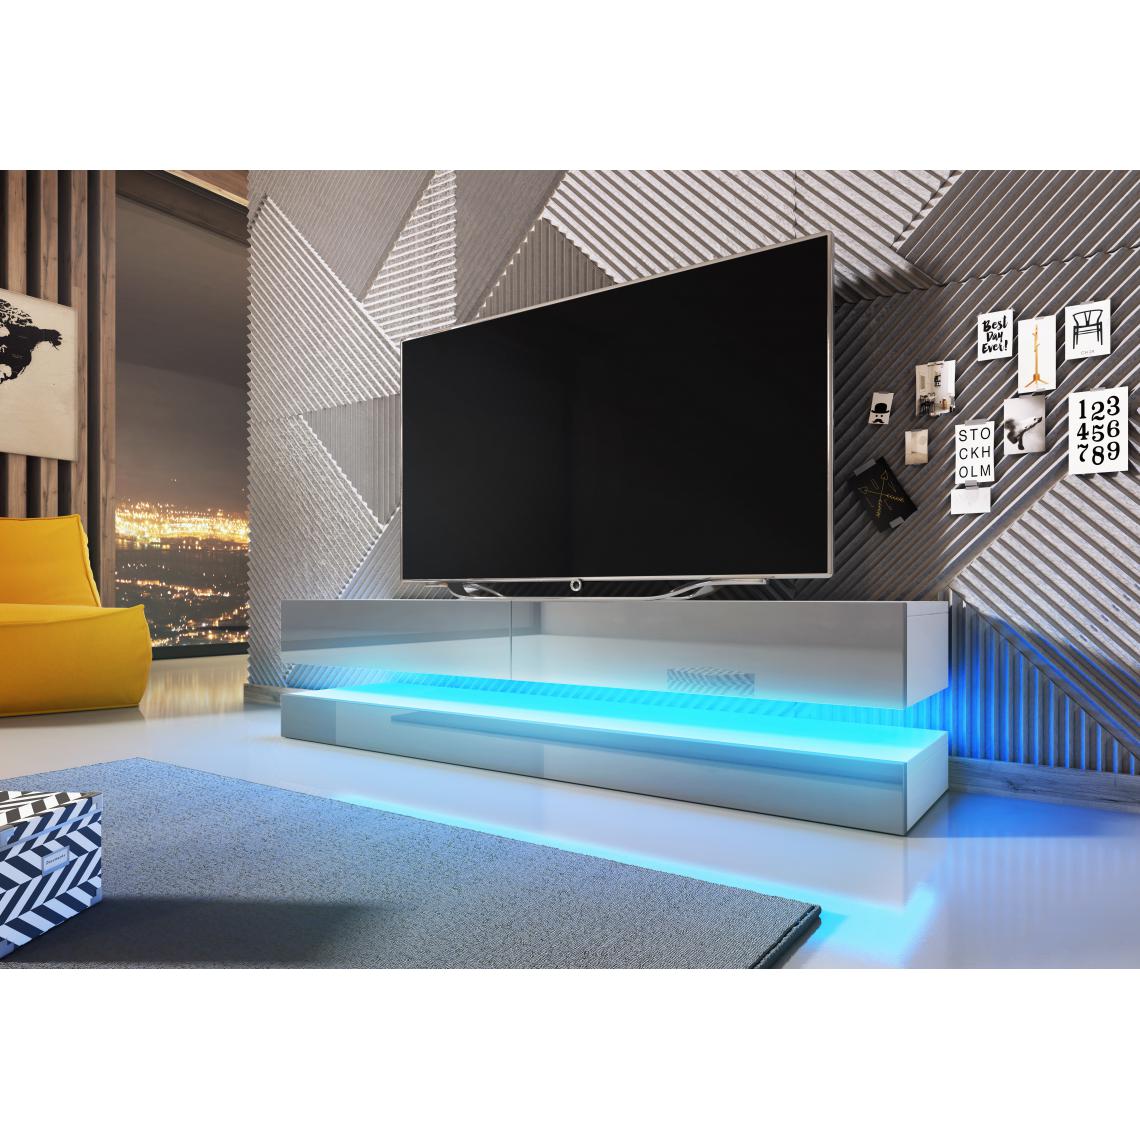 3xeliving - Table TV innovante et moderne Sajna avec éclairage LED, 140cm, blanc / gris brillant - Meubles TV, Hi-Fi